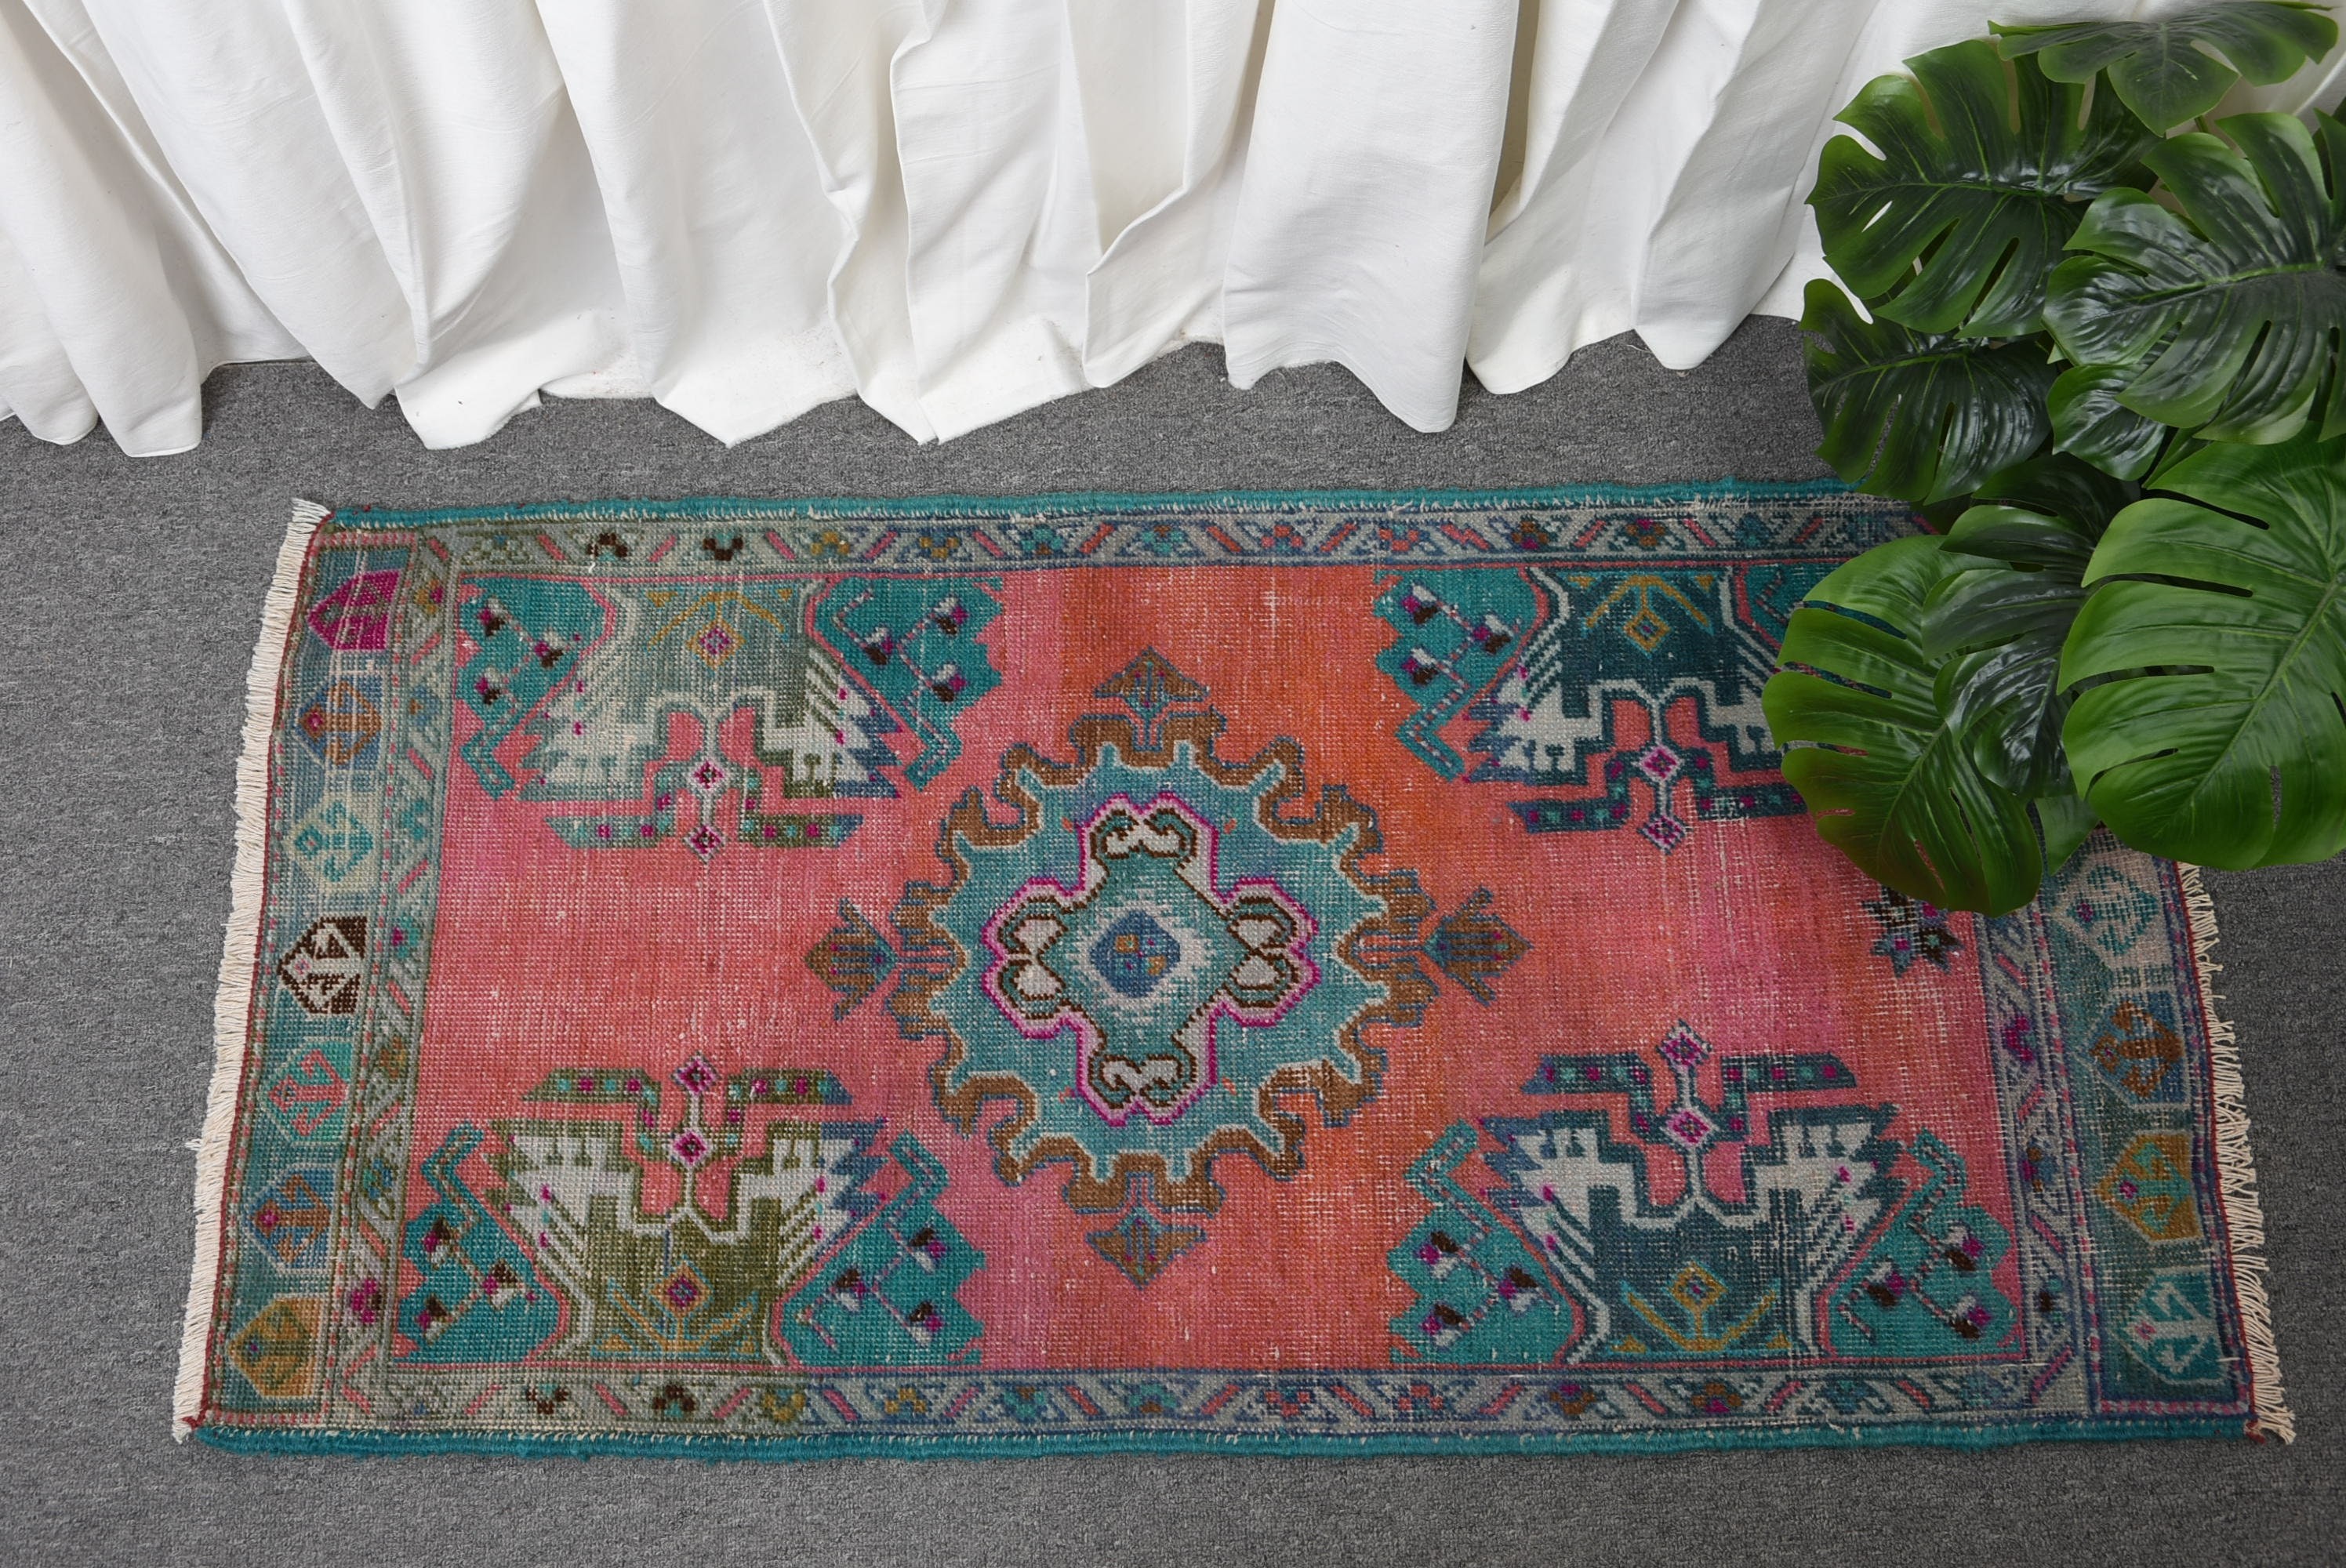 Anatolian Rugs, Vintage Rugs, Turkish Rug, Floor Rug, Pink  1.8x3.7 ft Small Rugs, Wall Hanging Rugs, Pastel Rug, Bedroom Rugs